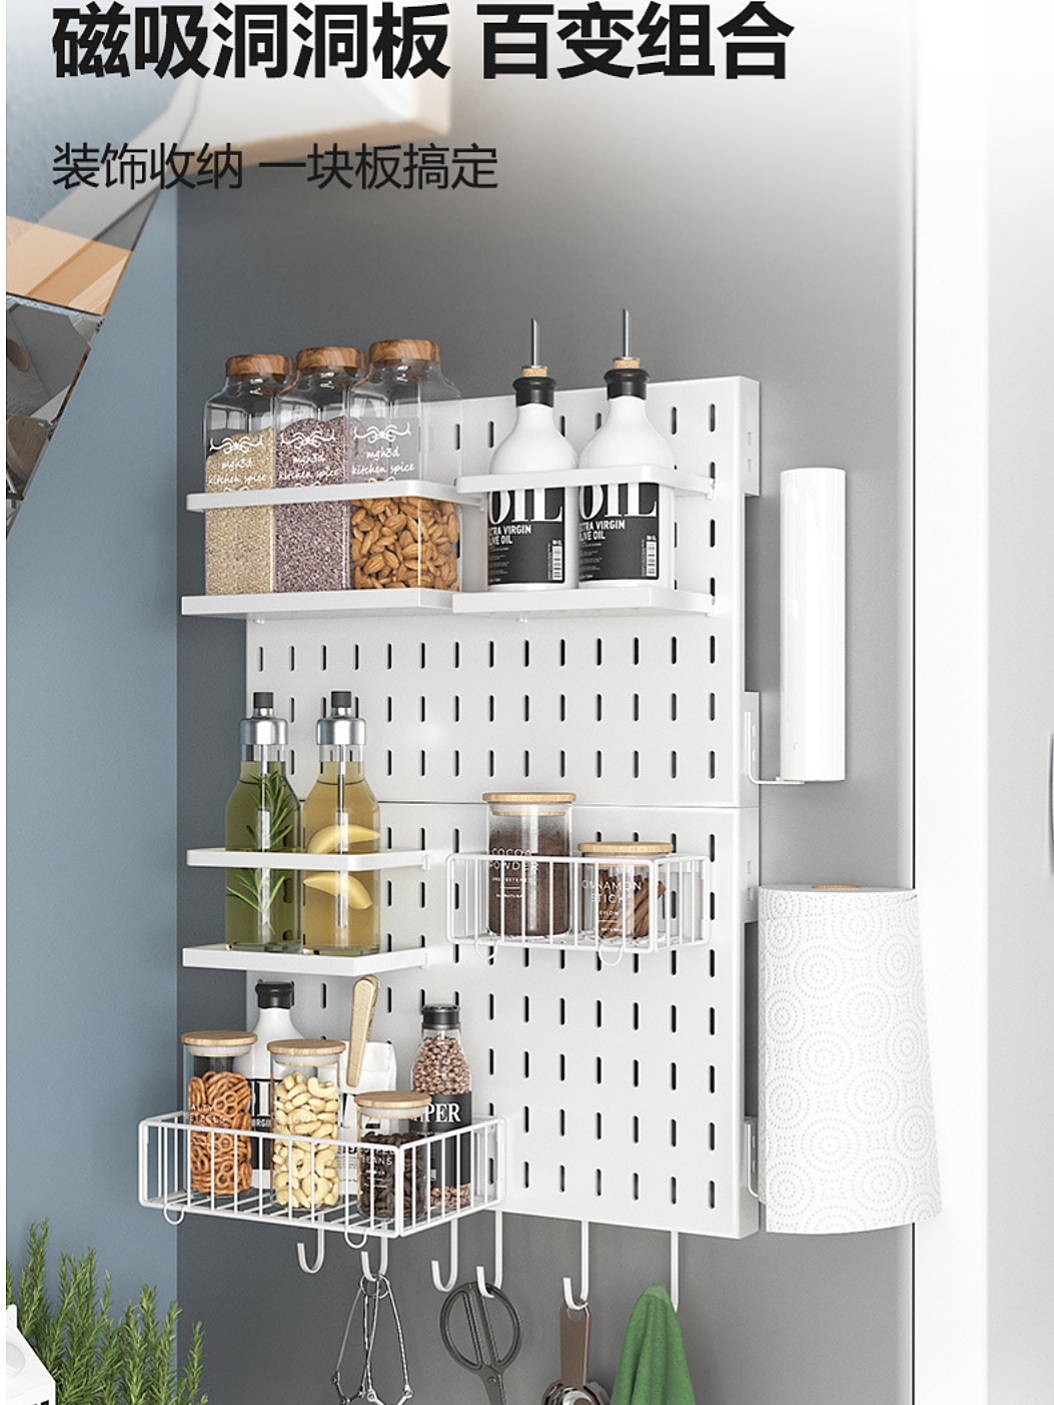 冰箱置物架多層組合收納架 簡約現代風格碳鋼壁掛式夾縫洞洞板架子 (8.3折)